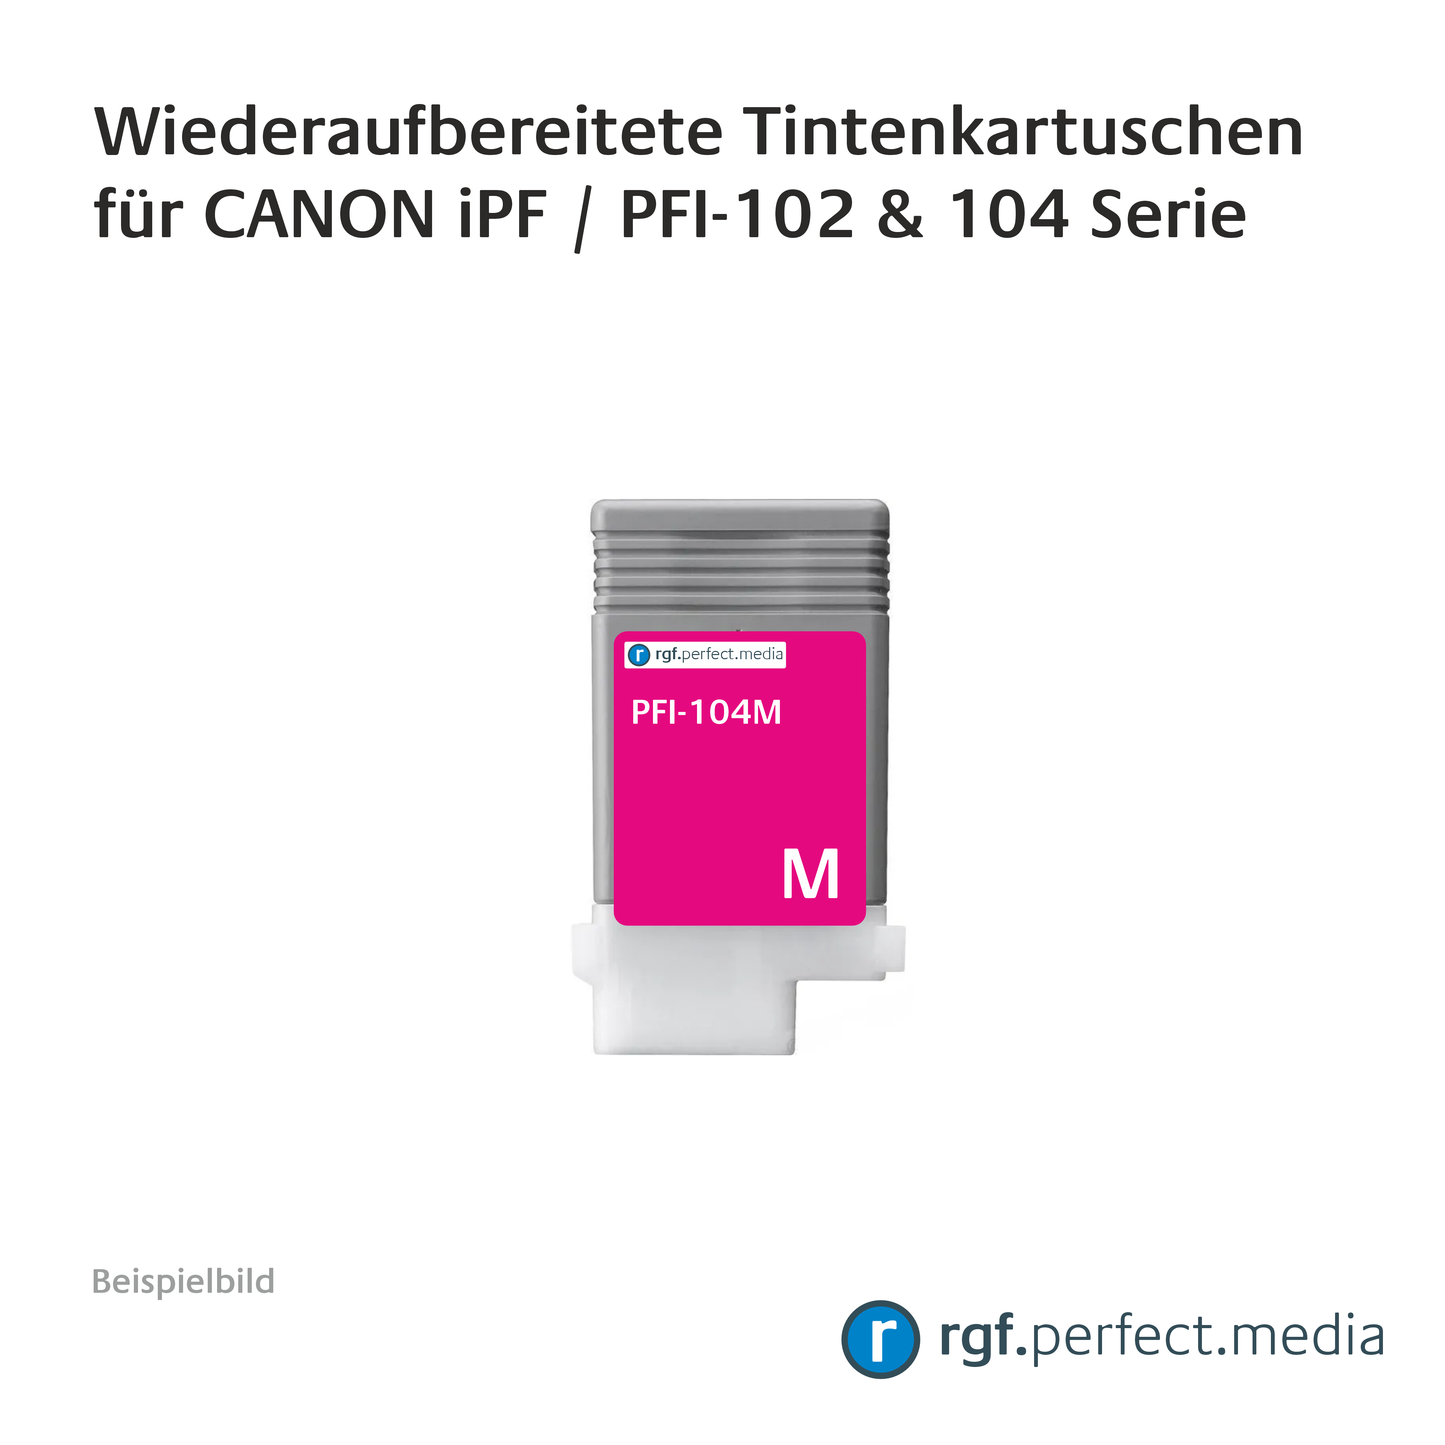 Wiederaufbereitete Tintenkartuschen No.102 + No.104 Serie kompatibel für Canon iPF - Serie